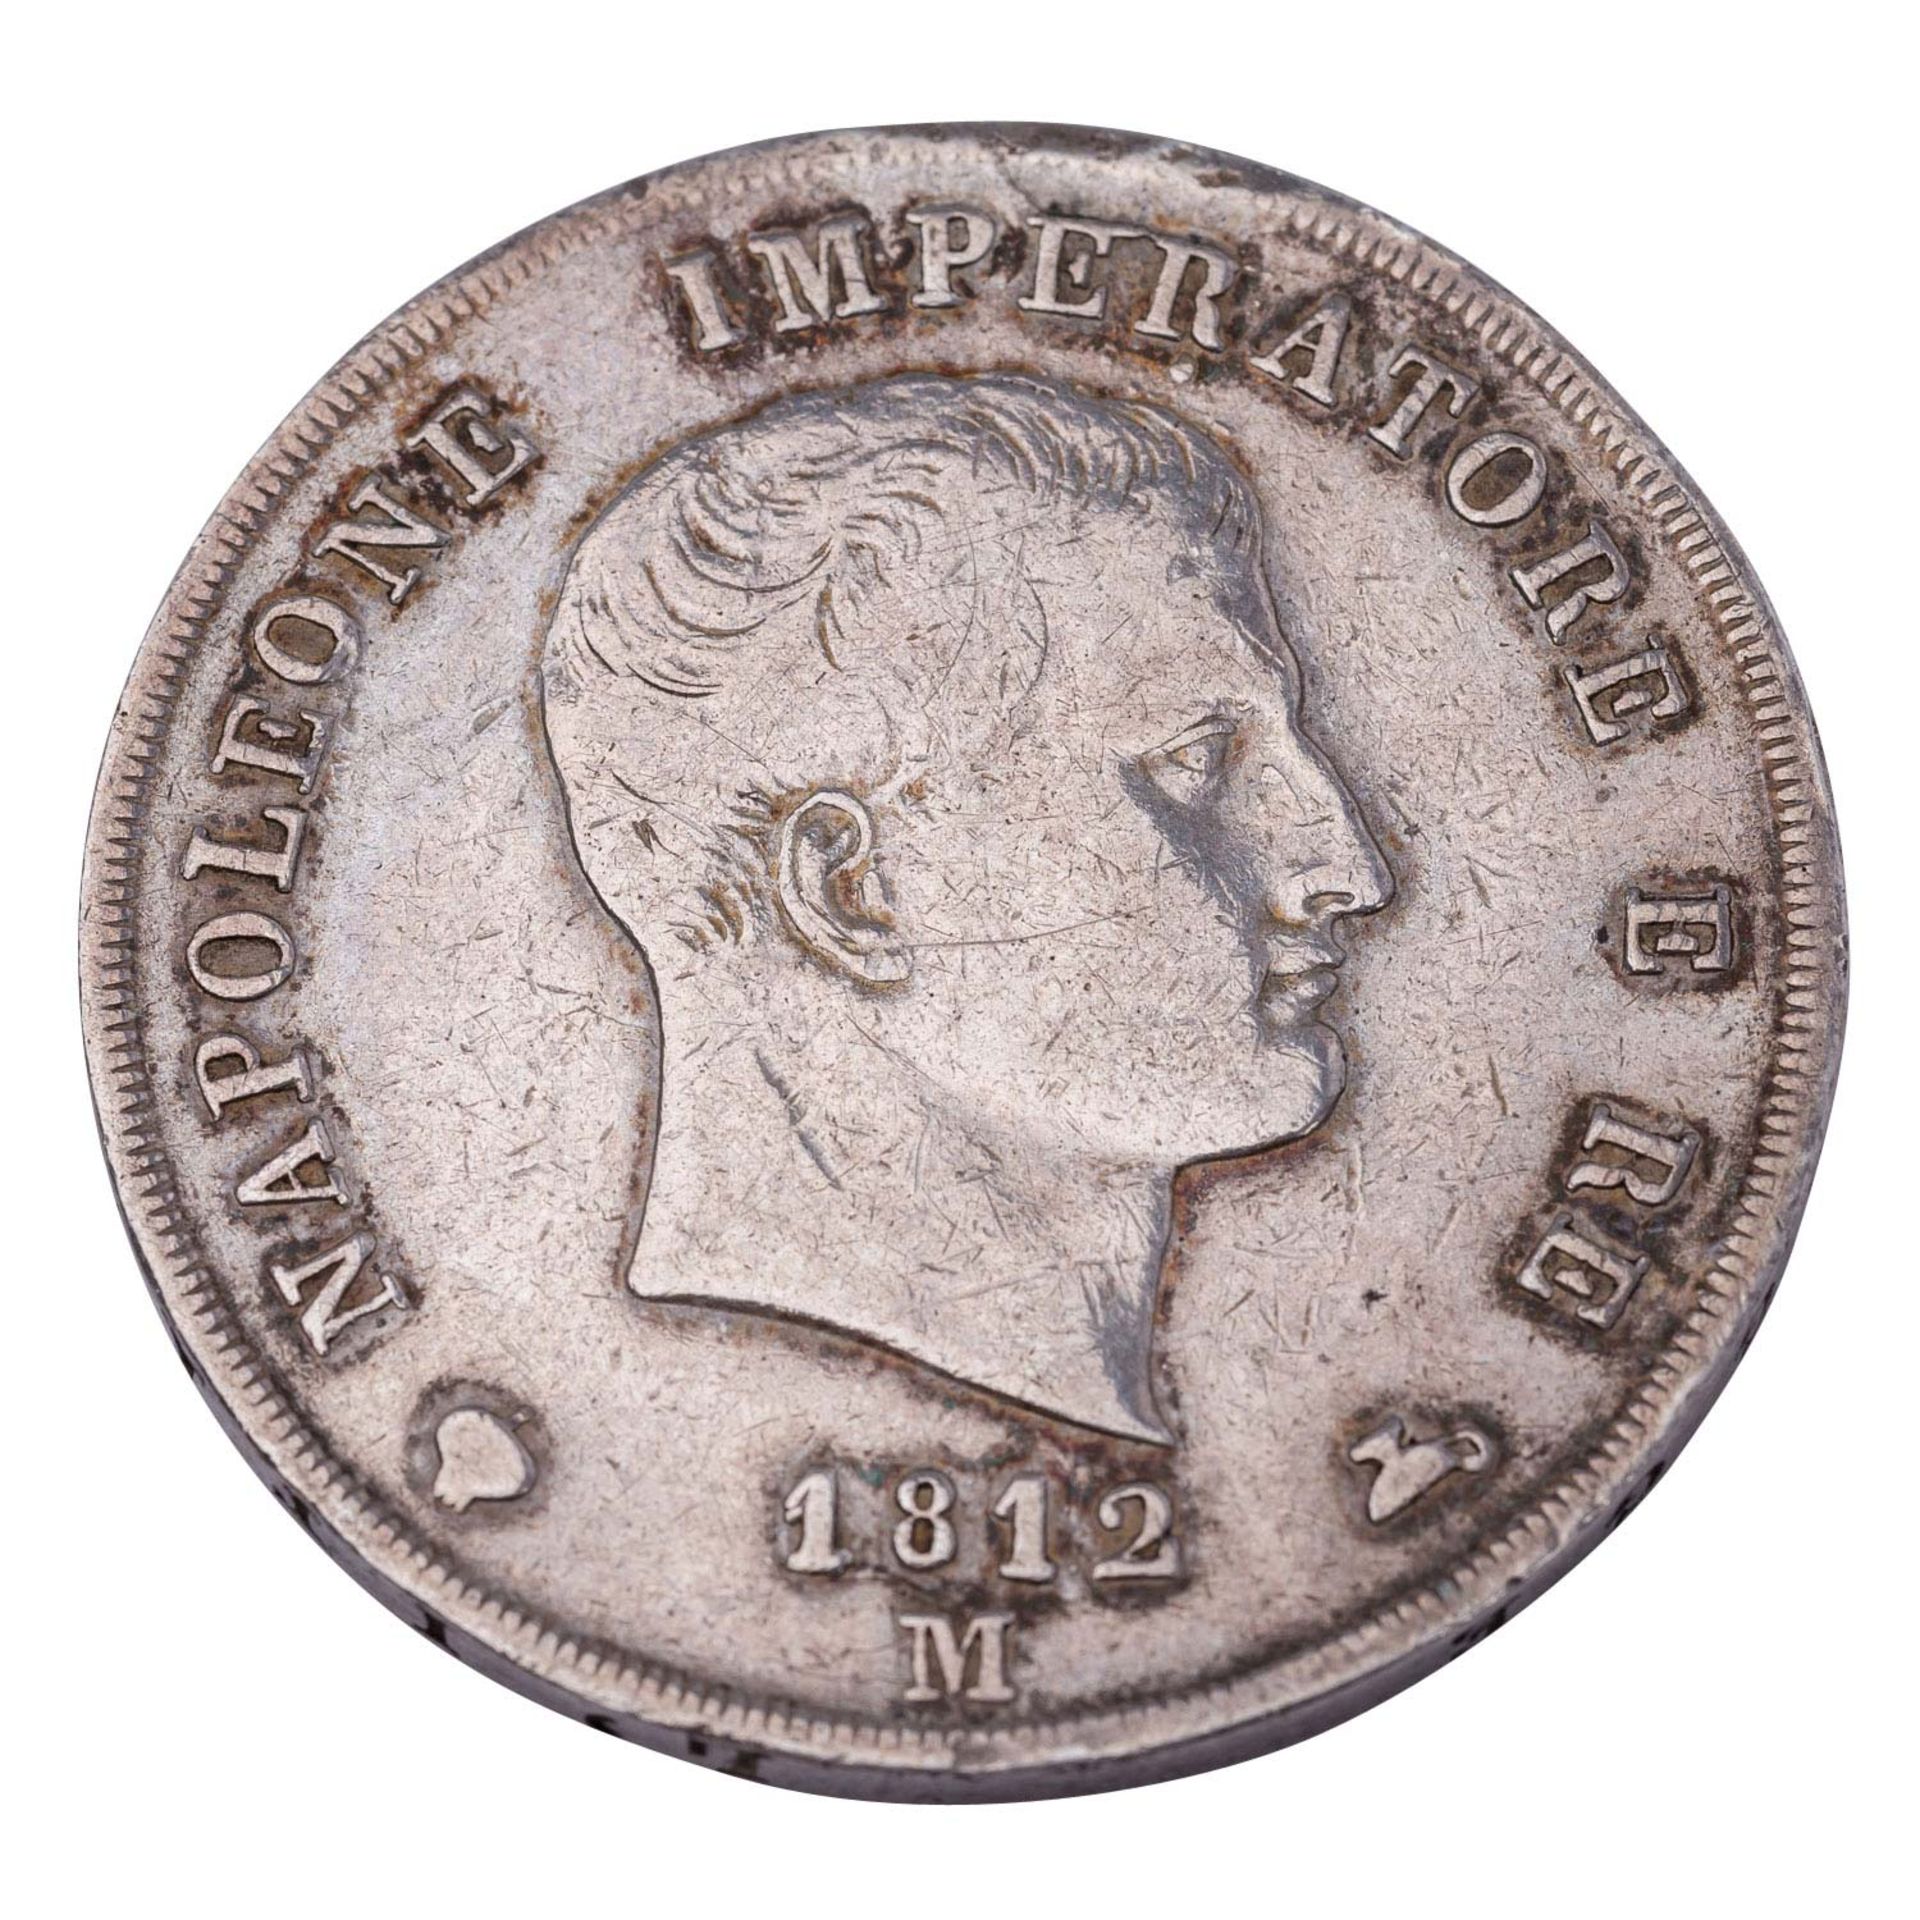 Italien/Königreich Napoleon - 5 Lire Napoleon I. 1812 M, ss+, - Image 2 of 2